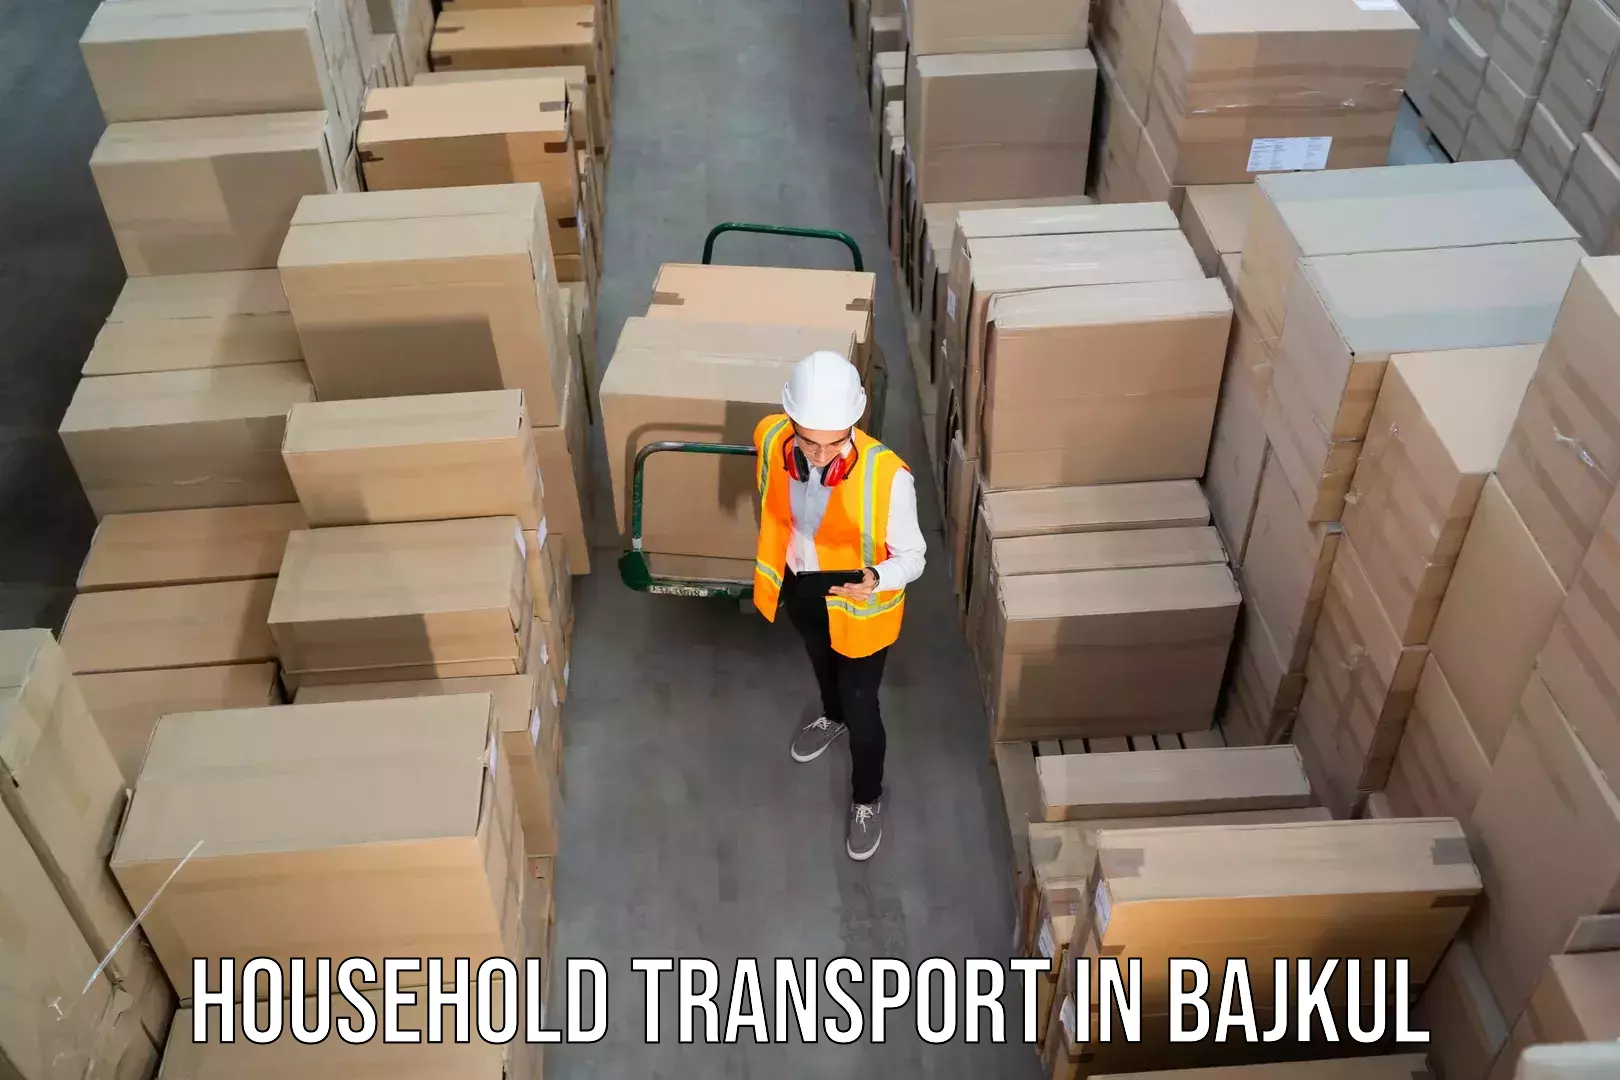 Expert goods movers in Bajkul